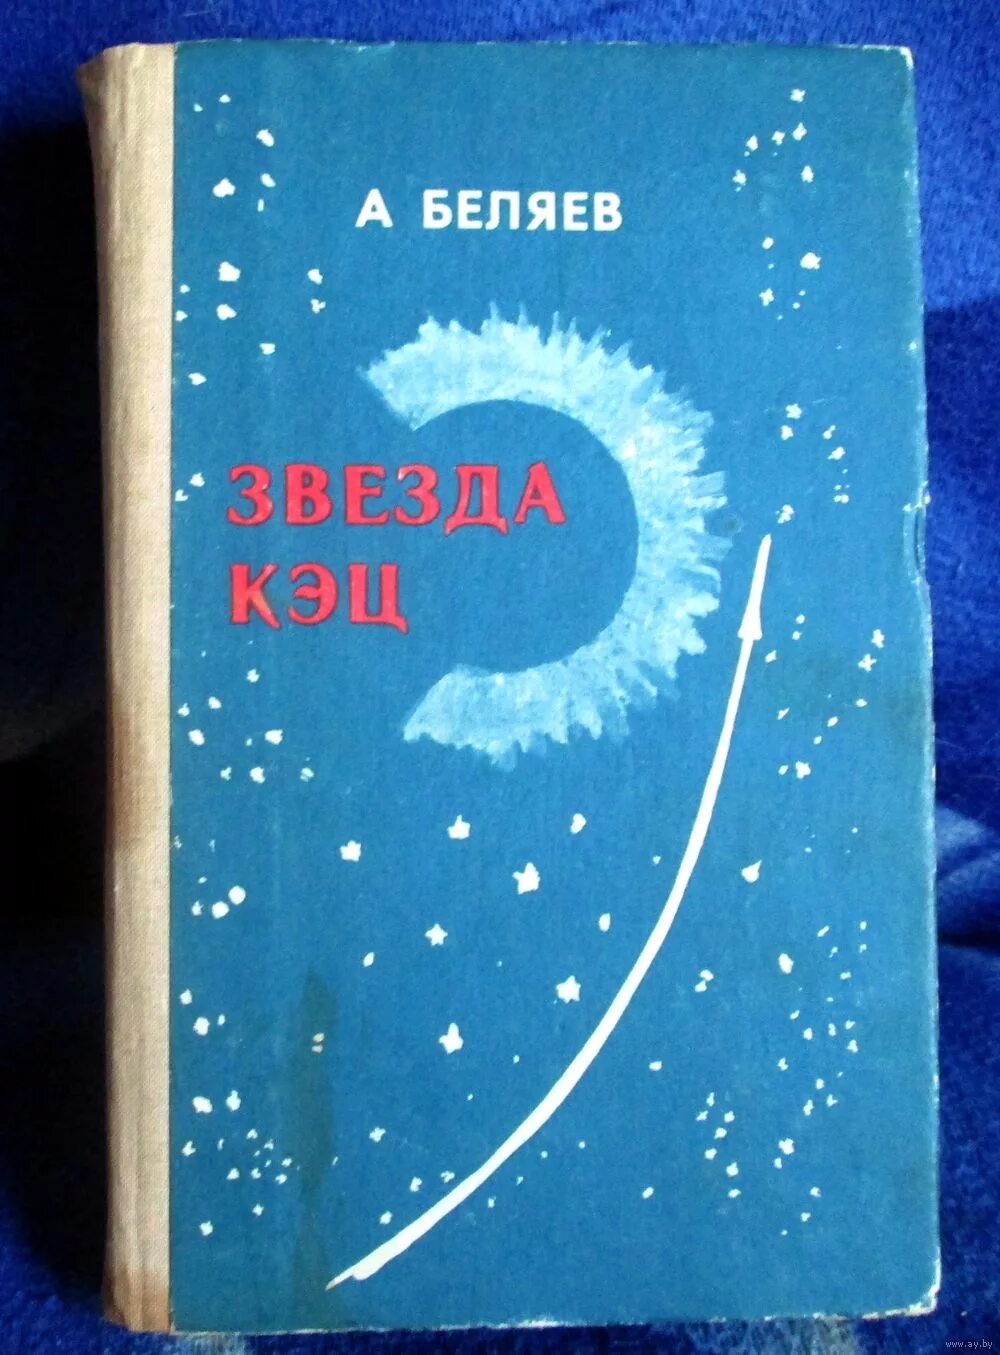 Беляева книги звезда кэц